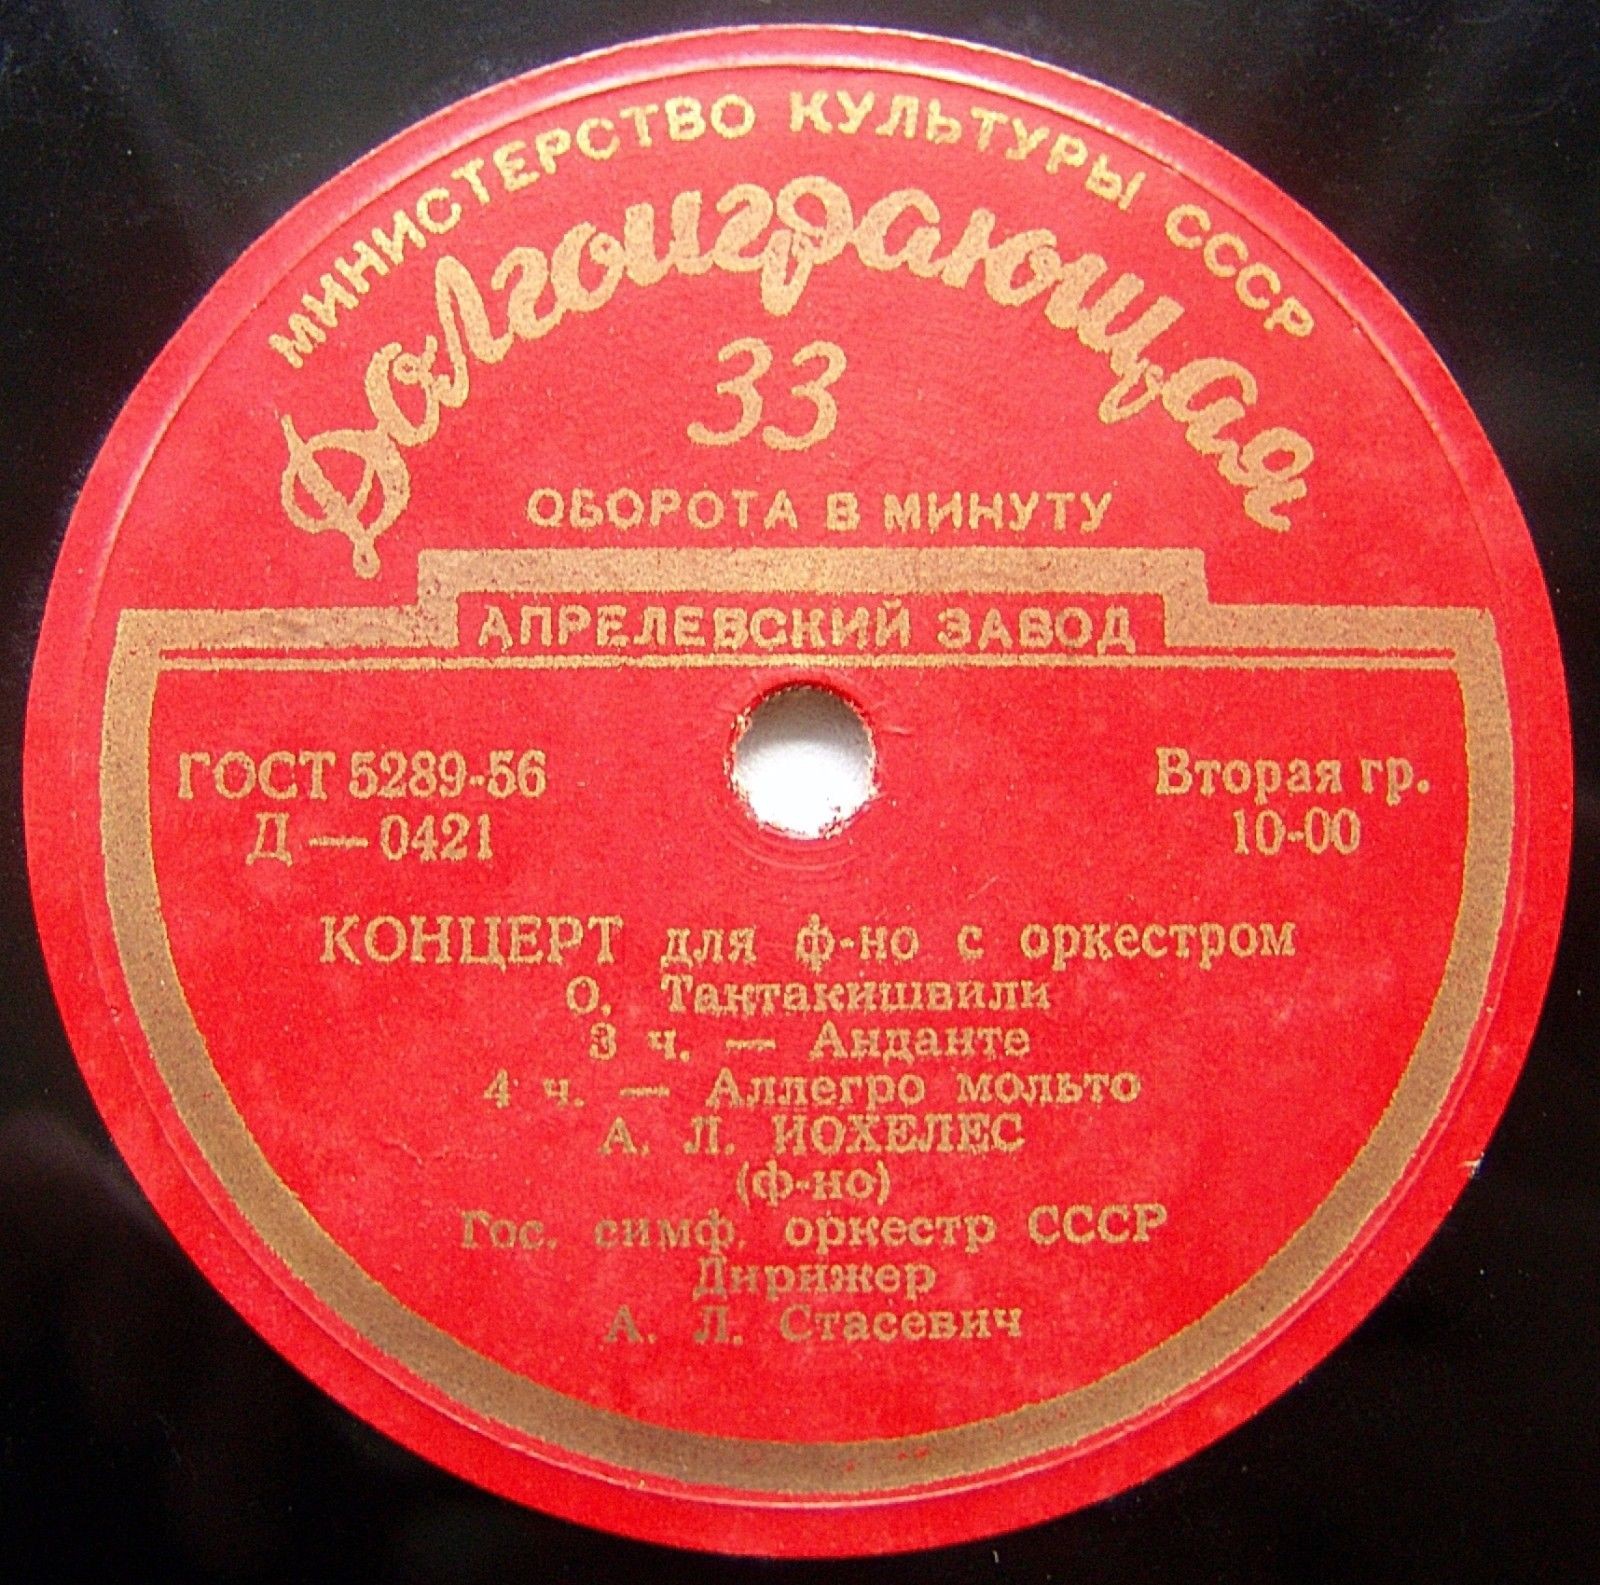 О. ТАКТАКИШВИЛИ (1924–1989): Концерт для фортепиано с оркестром (А. Иохелес, А. Стасевич)